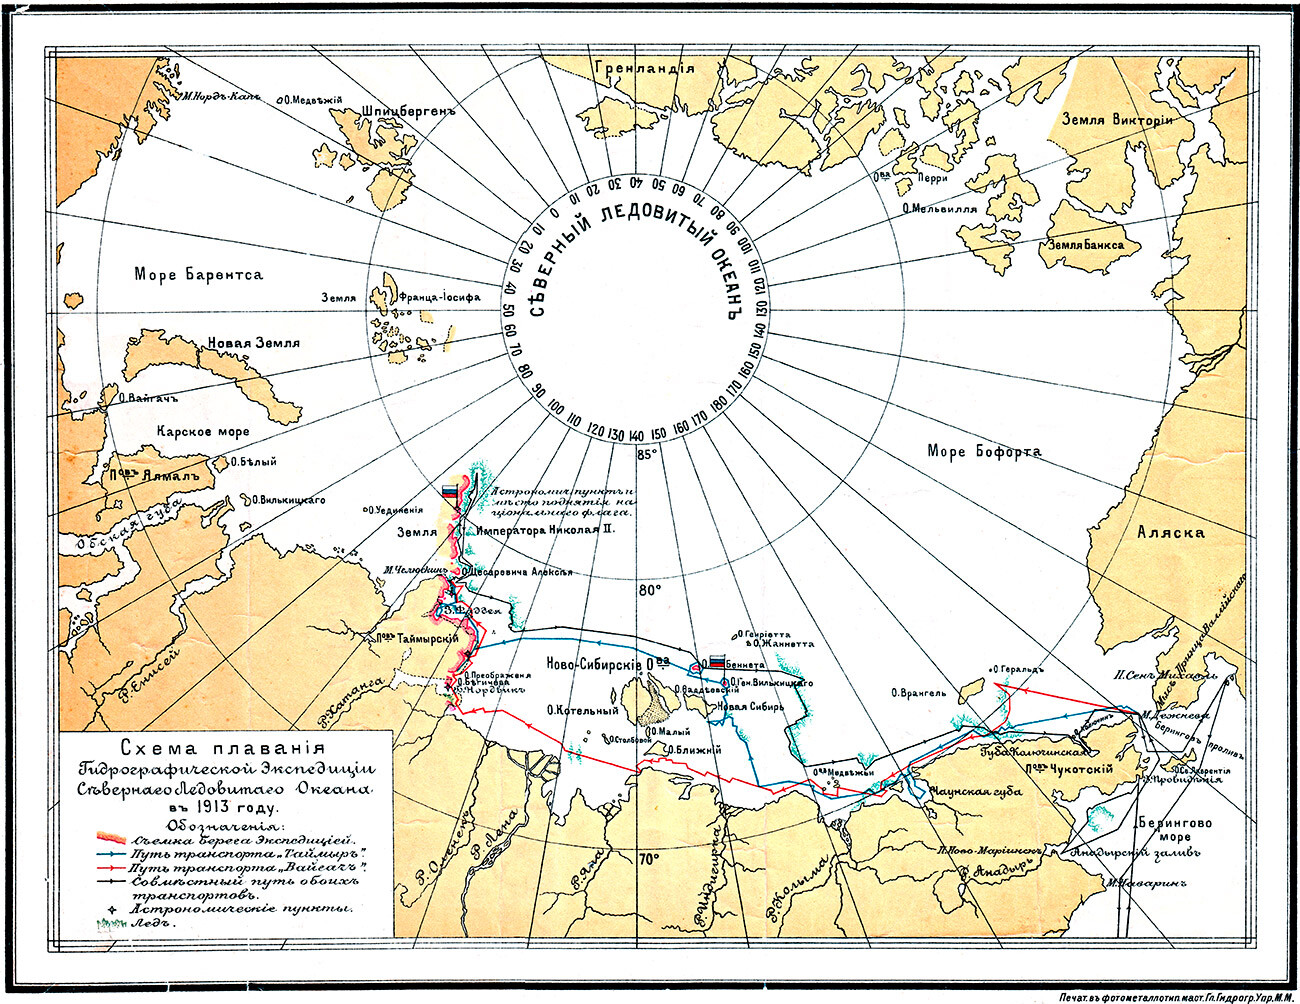  Навигационна скица на хидрографската експедиция на Северния ледовит океан през 1913 година 